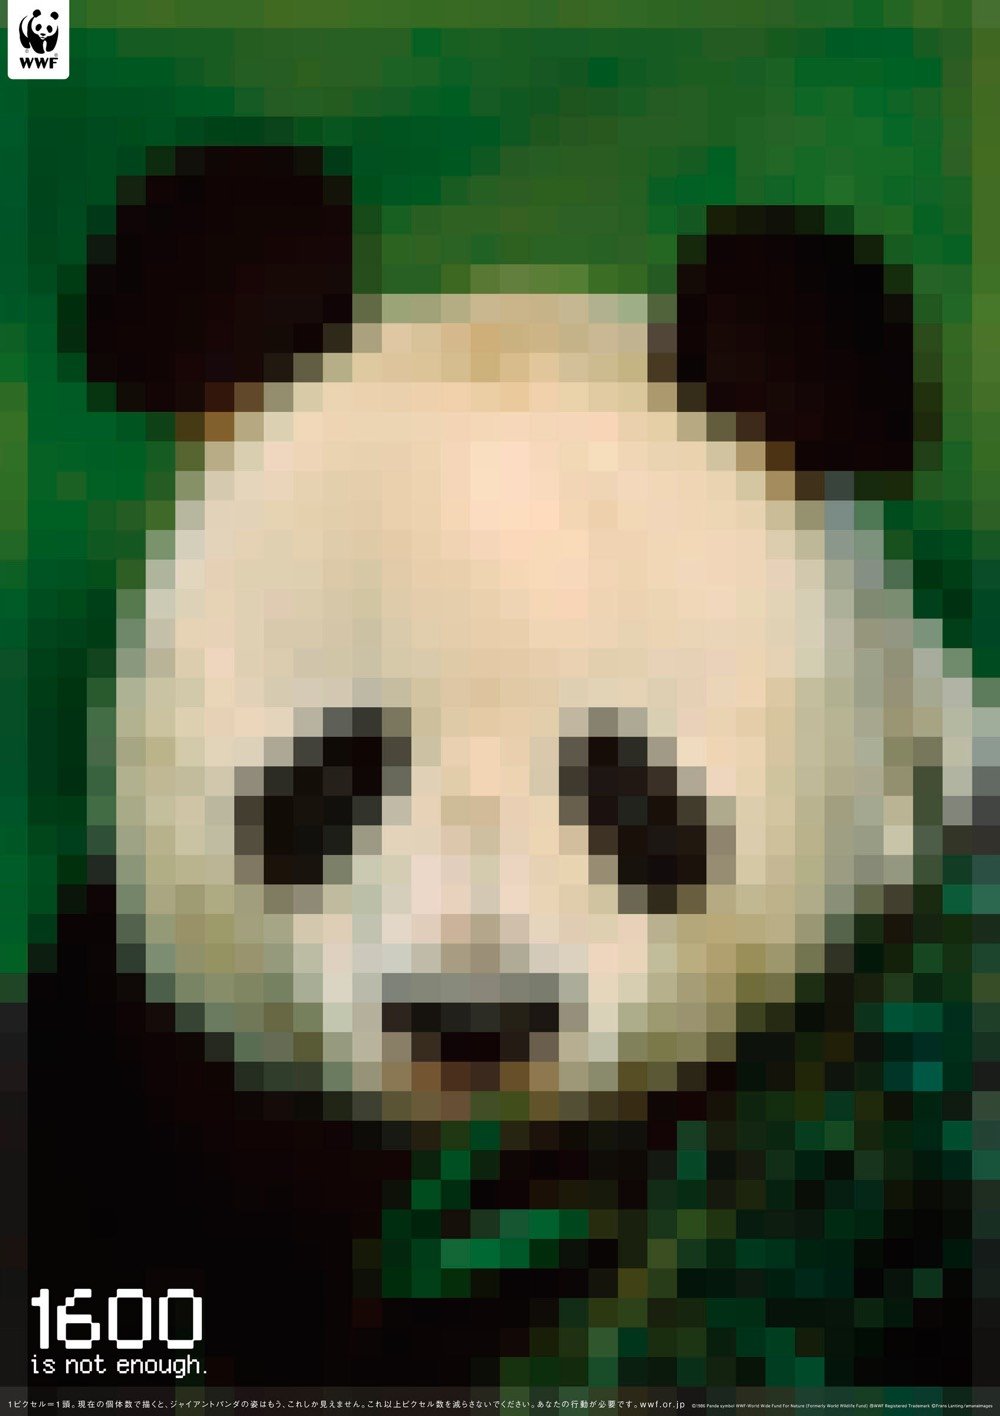 Pixel Endangered Species